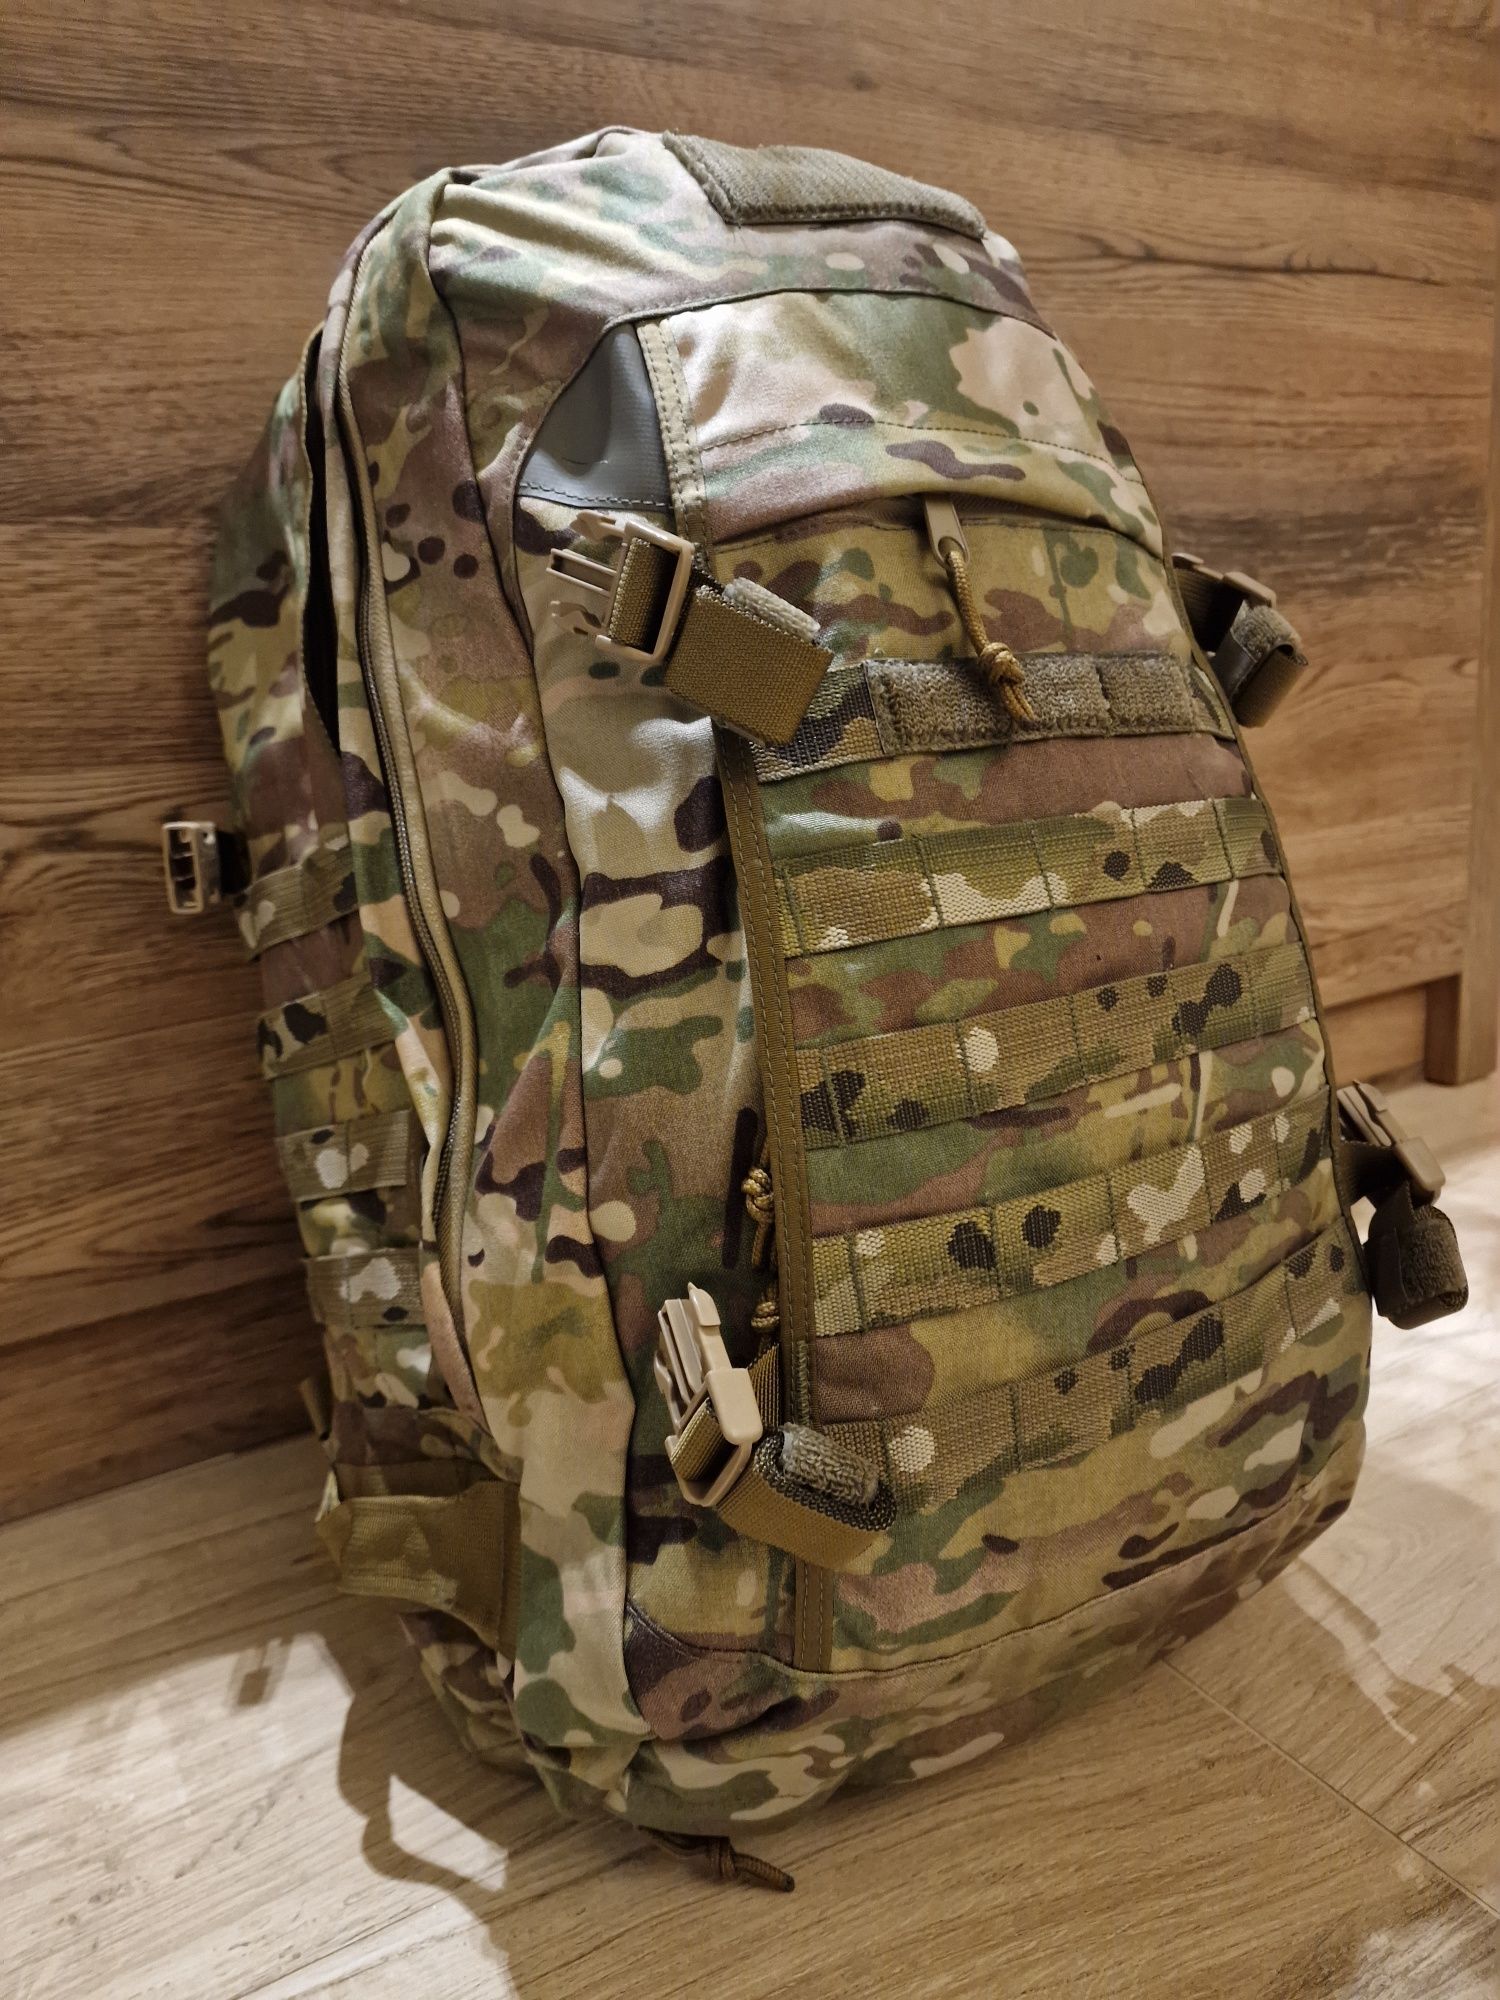 Plecak patrolowy Wojsk Specjalnych